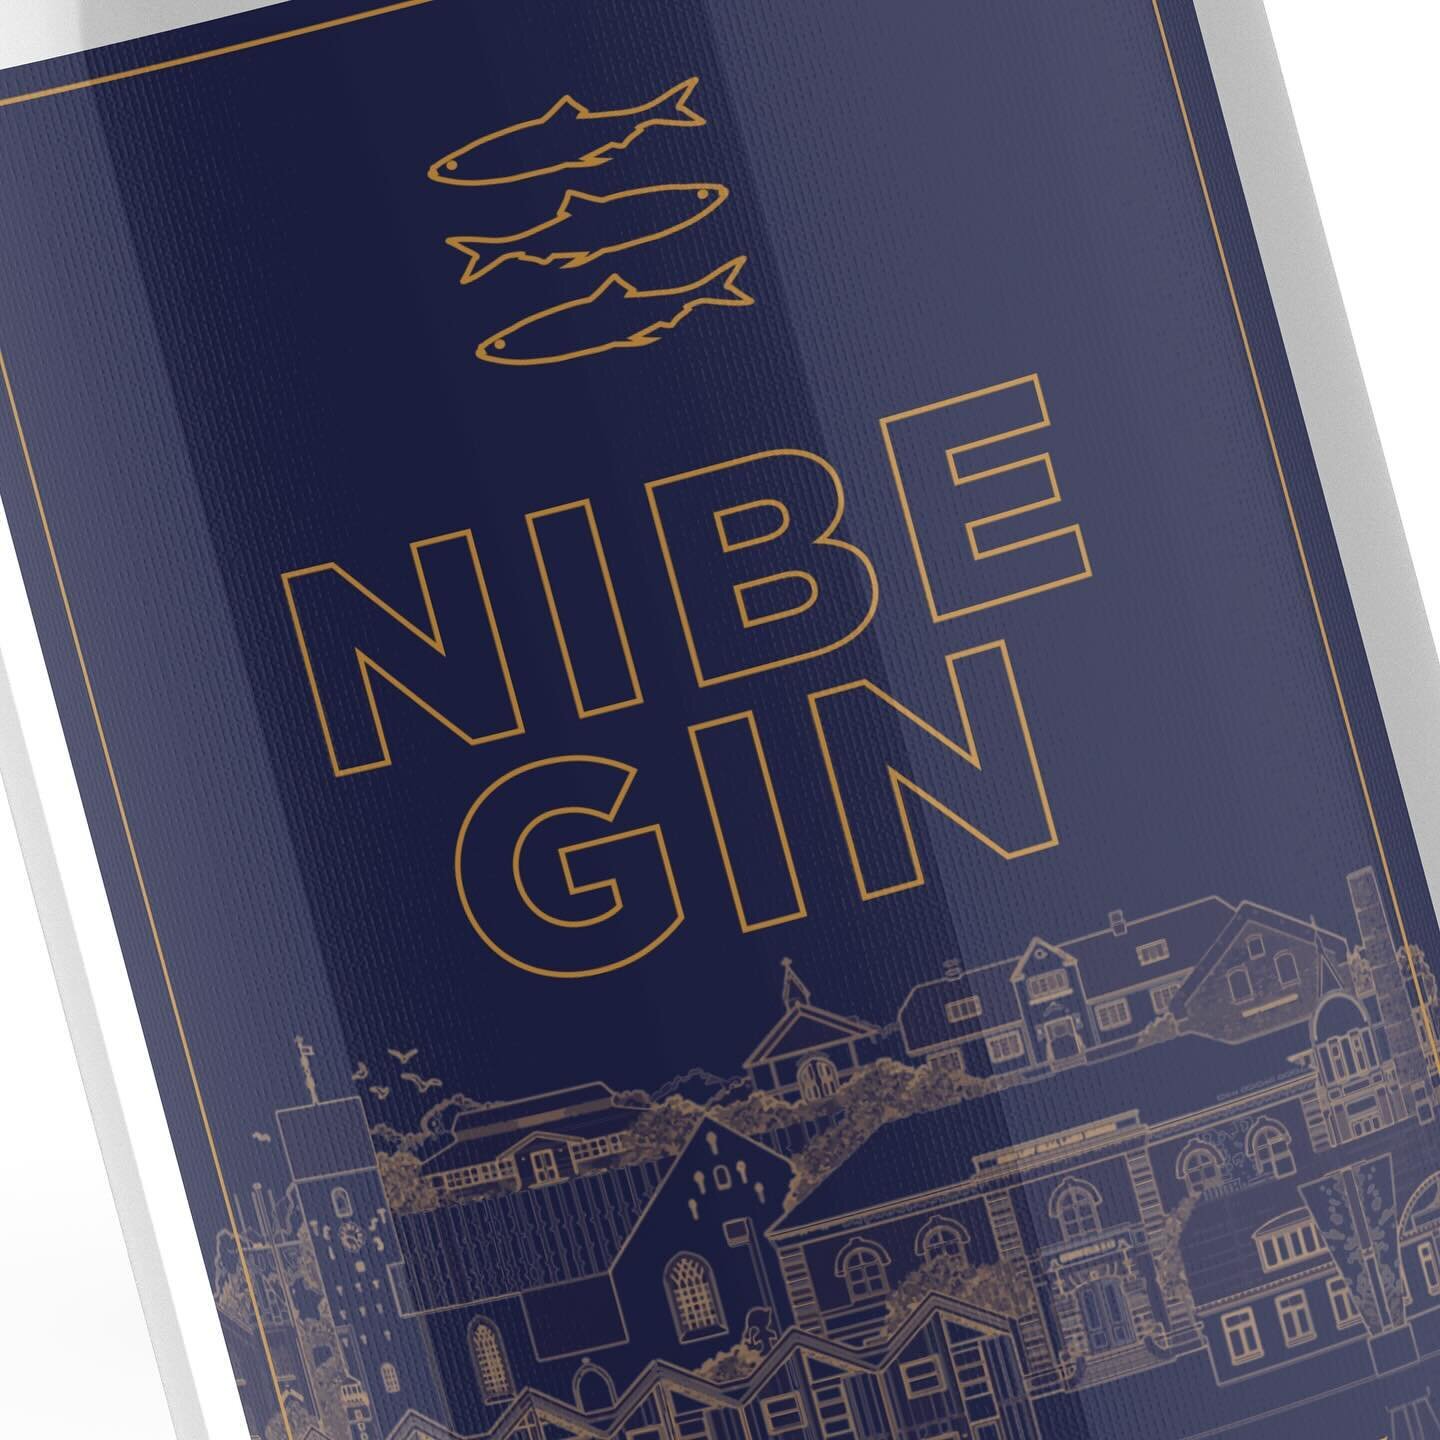 Design af label til hjembyens egen gin🍸😋
K&oslash;b den yderst smagfulde Nibe Gin hos @byfroberg